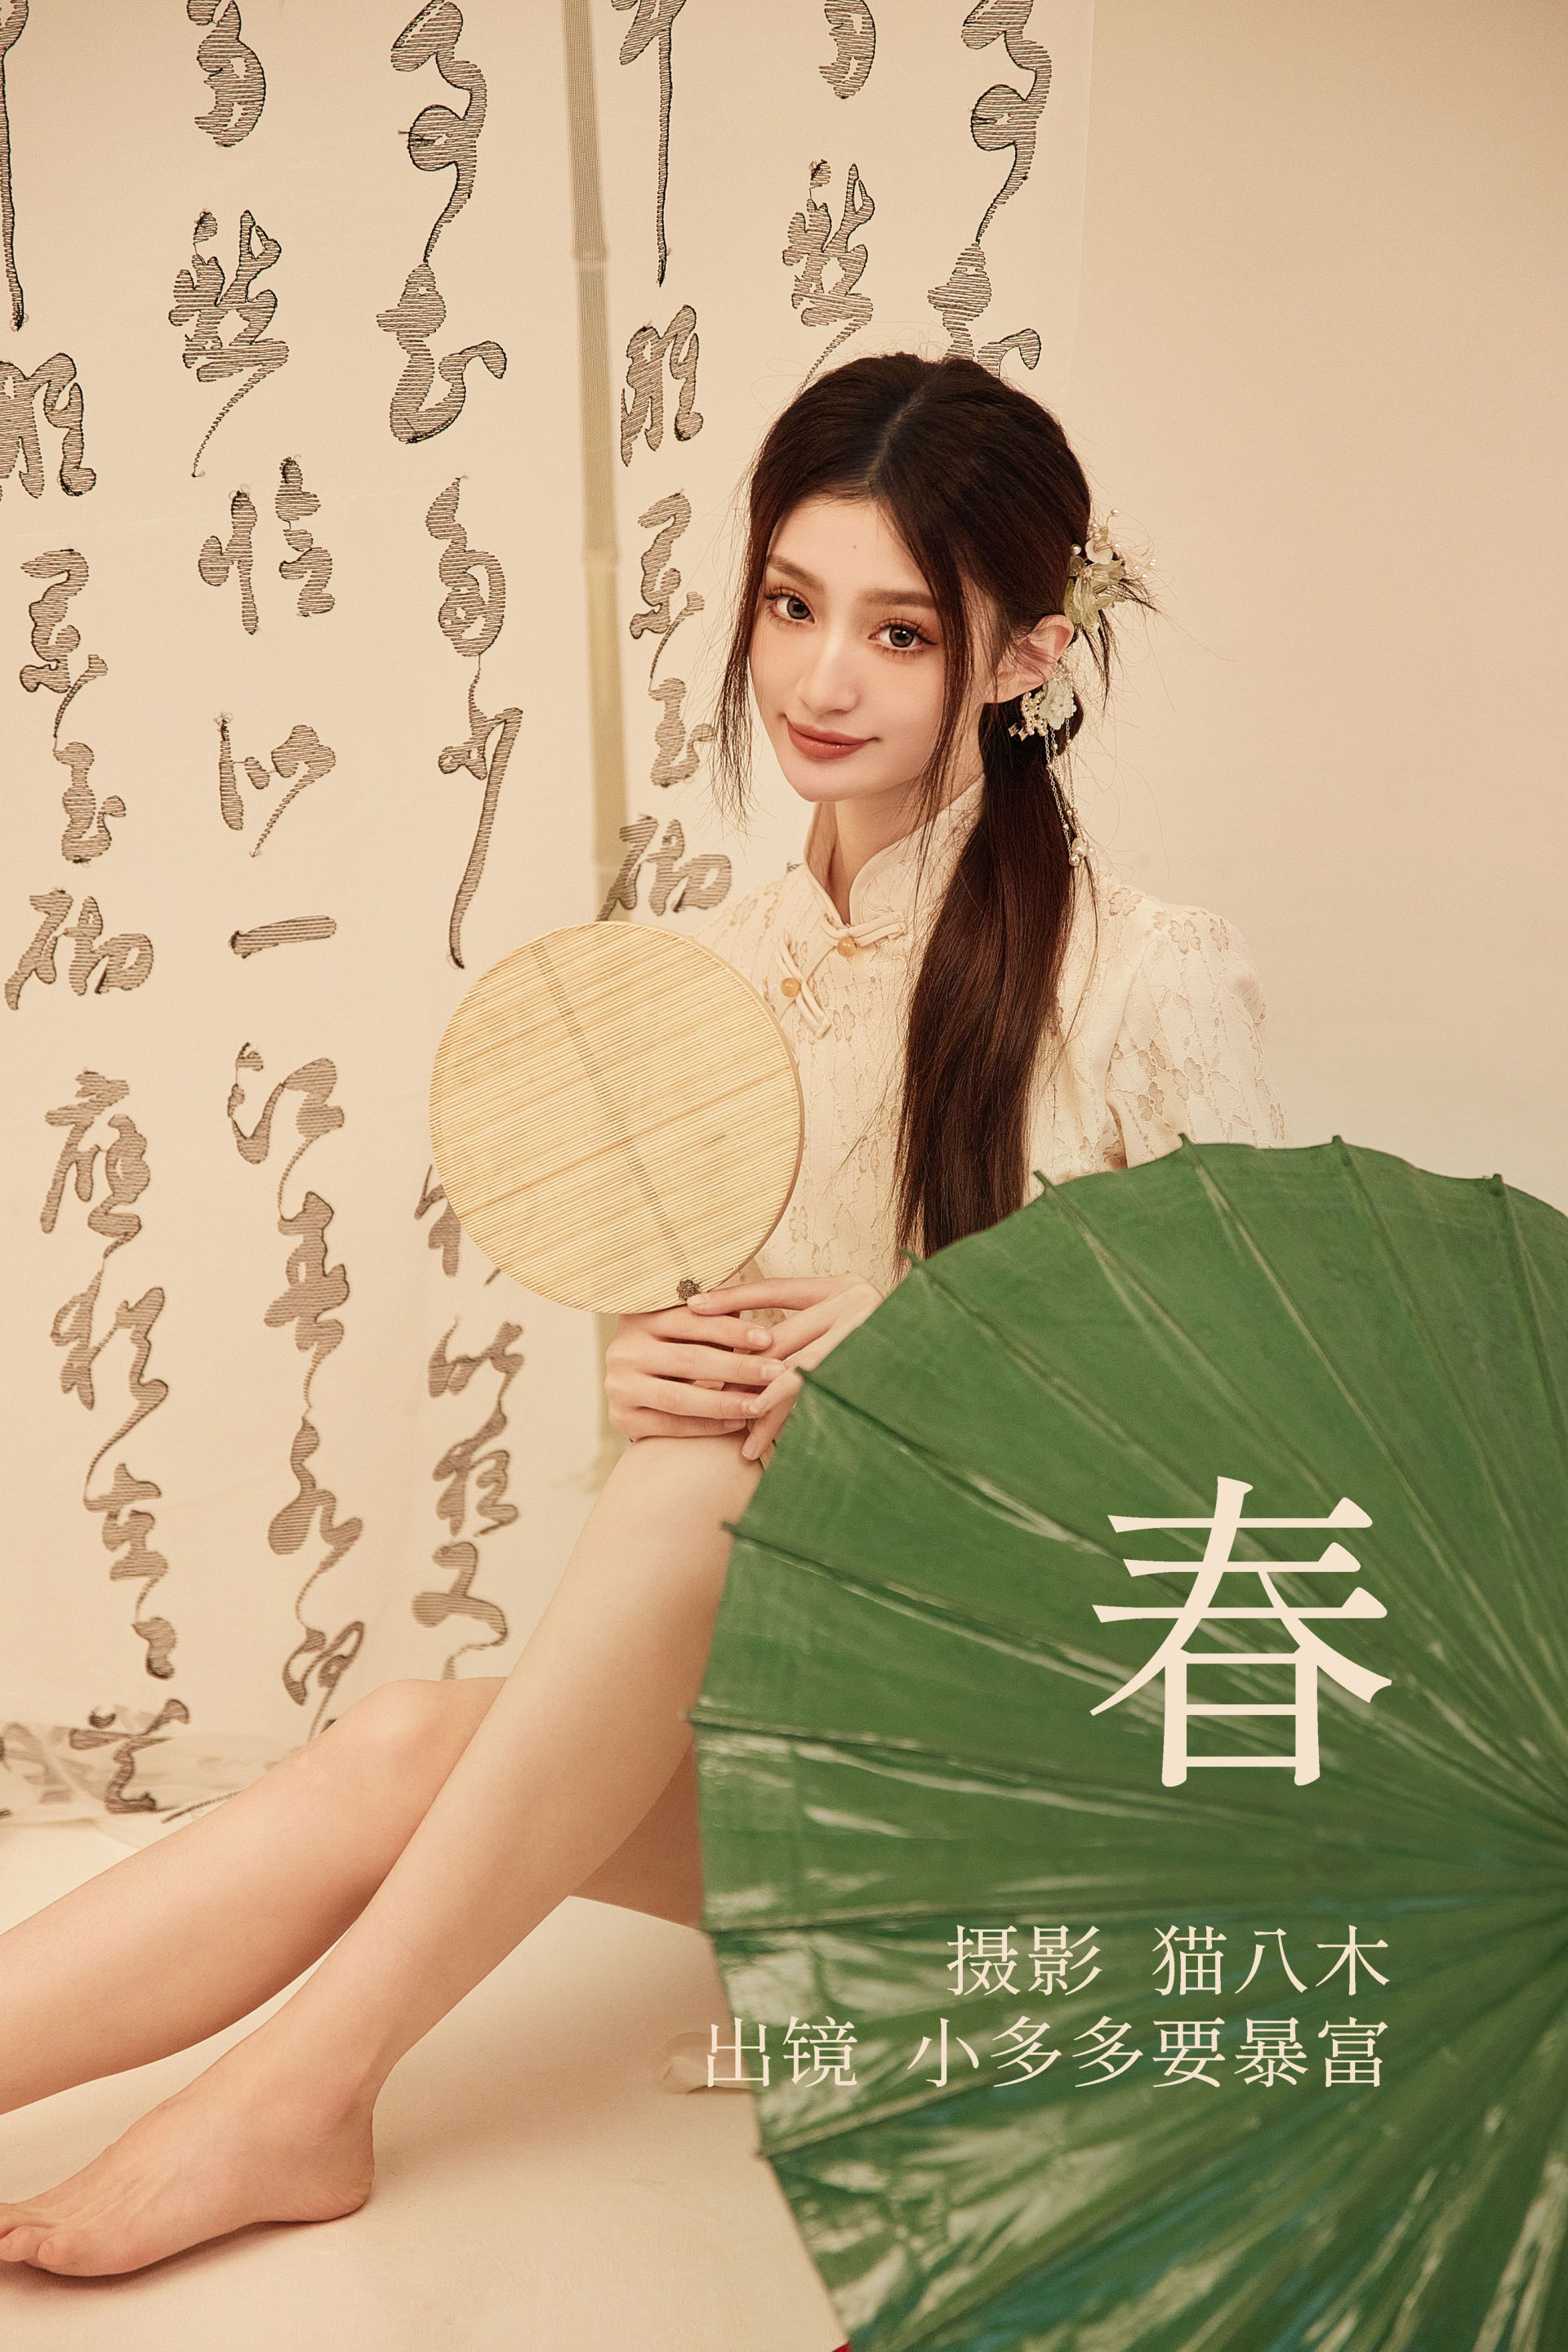 春 古典 中国风 旗袍 艺术 美图 模特